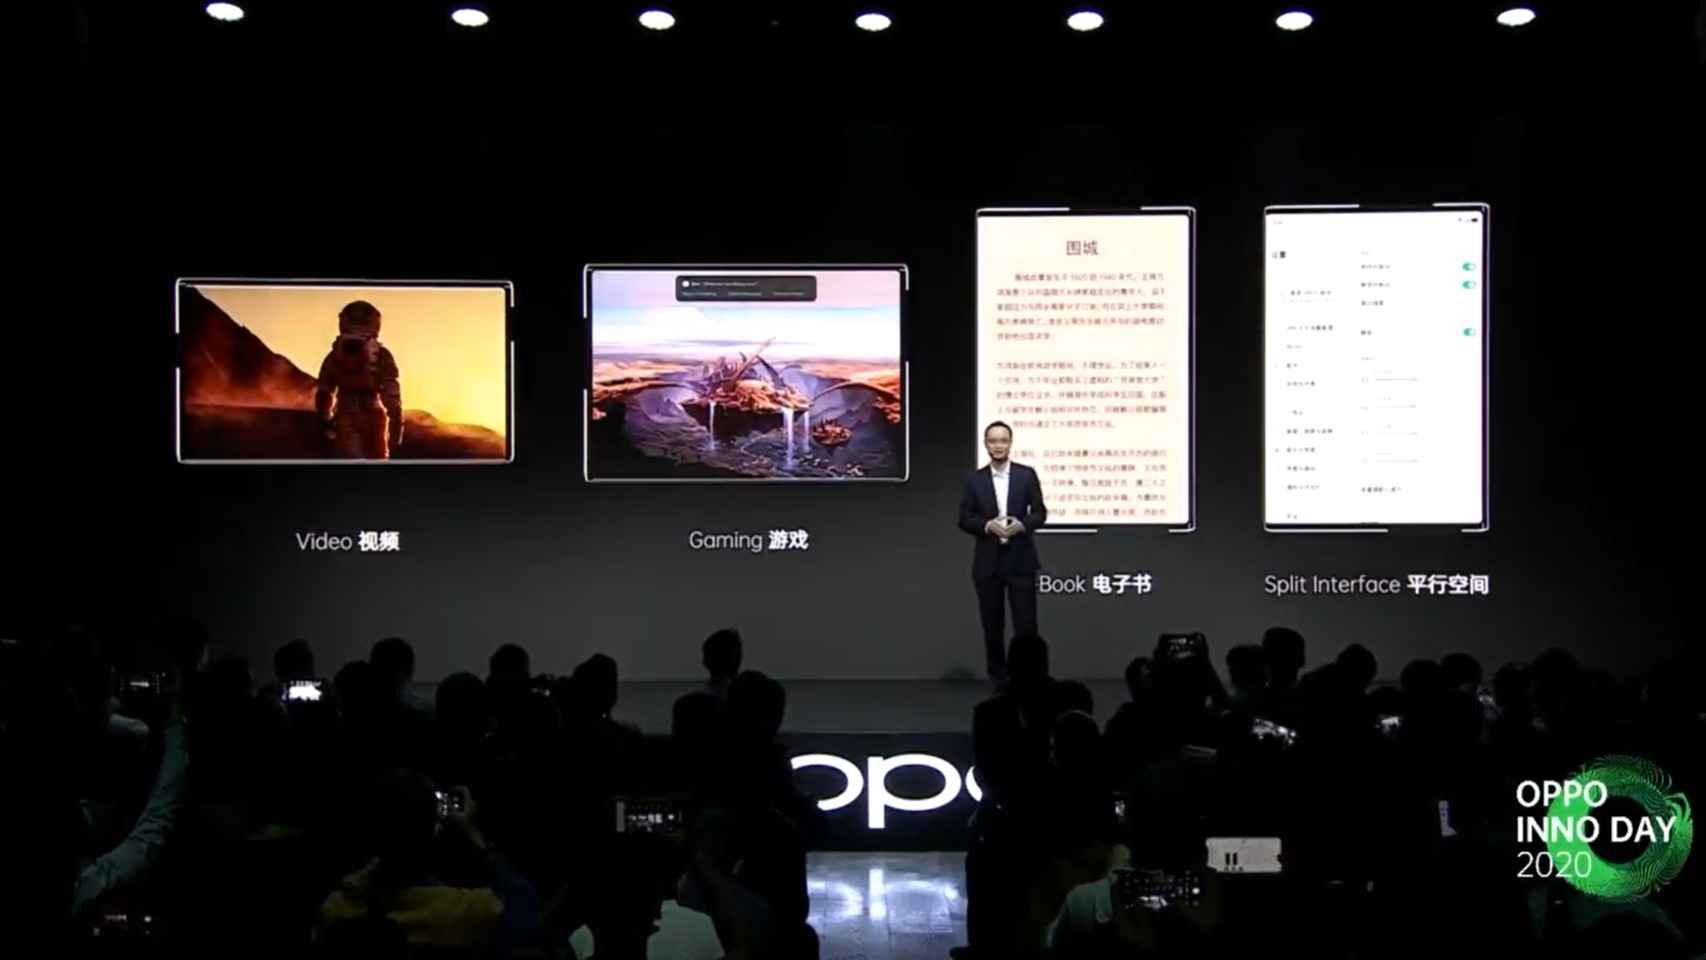 El Oppo X 2021 puede expandir su pantalla de 6,7 pulgadas a 7,4 pulgadas.